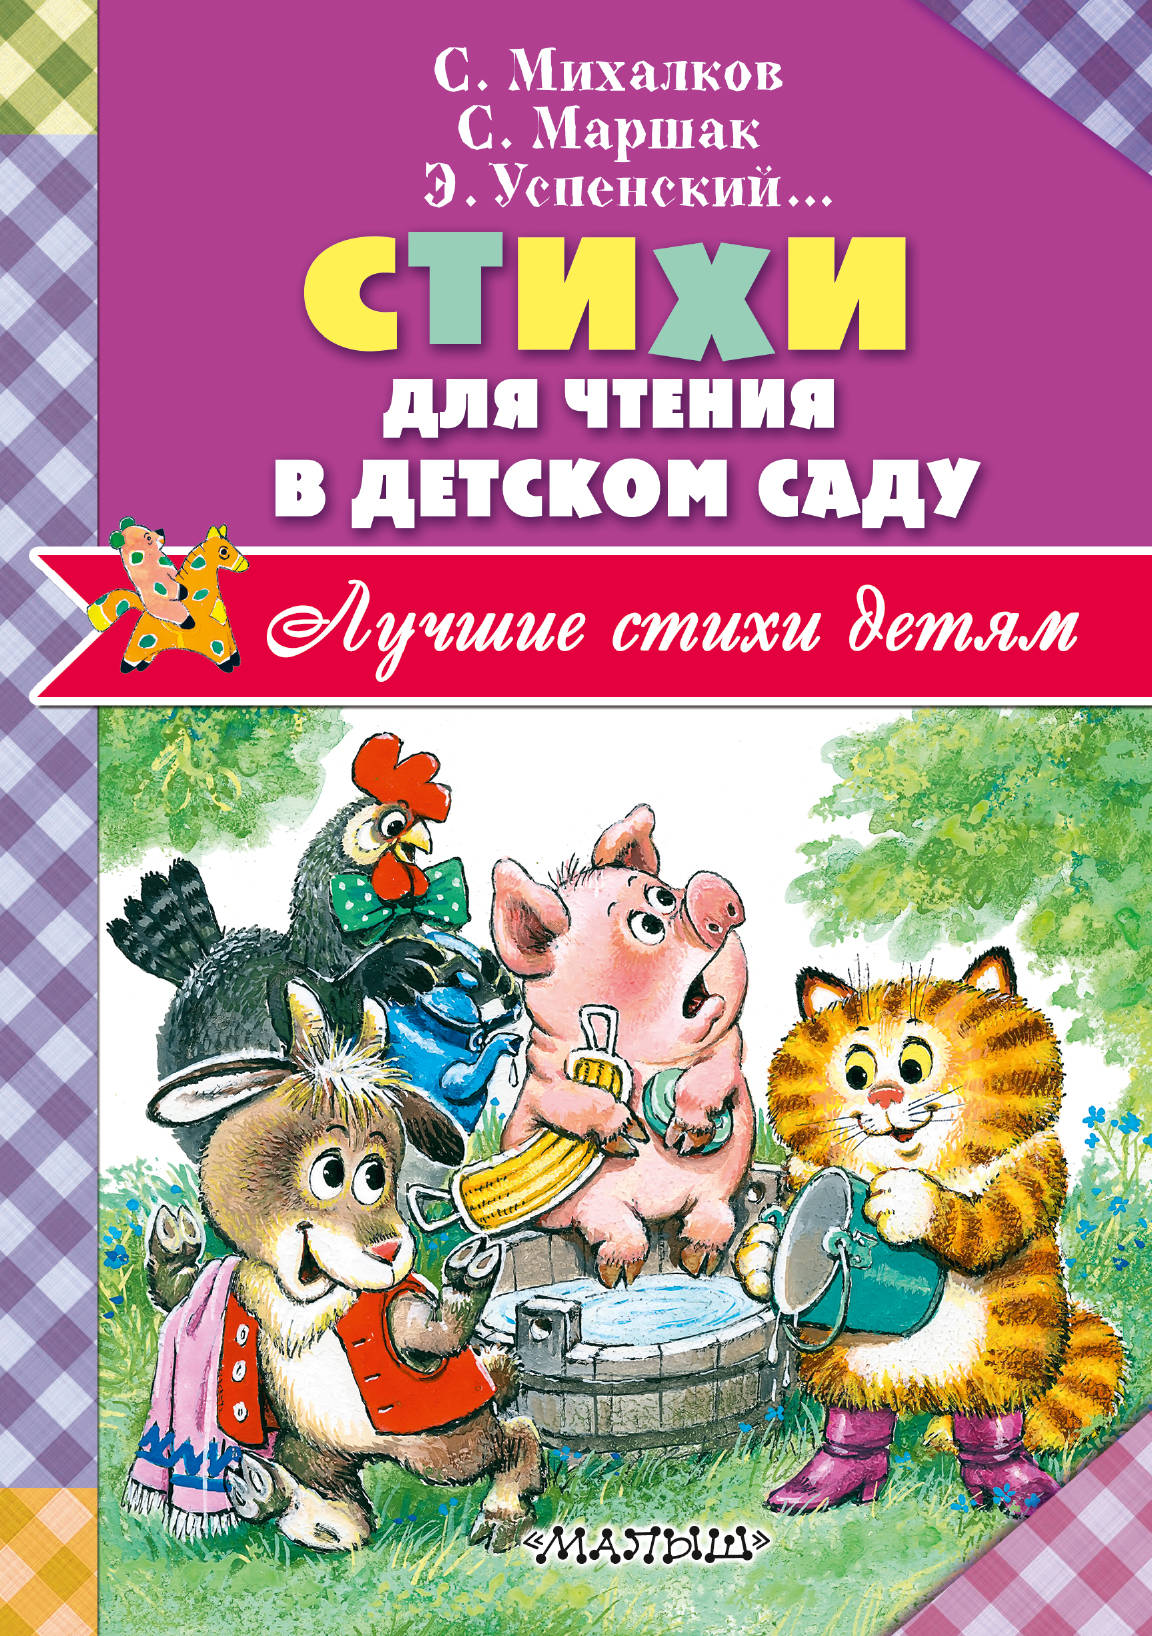 Стихи для чтения в детском саду. Маршак Самуил Яковлевич